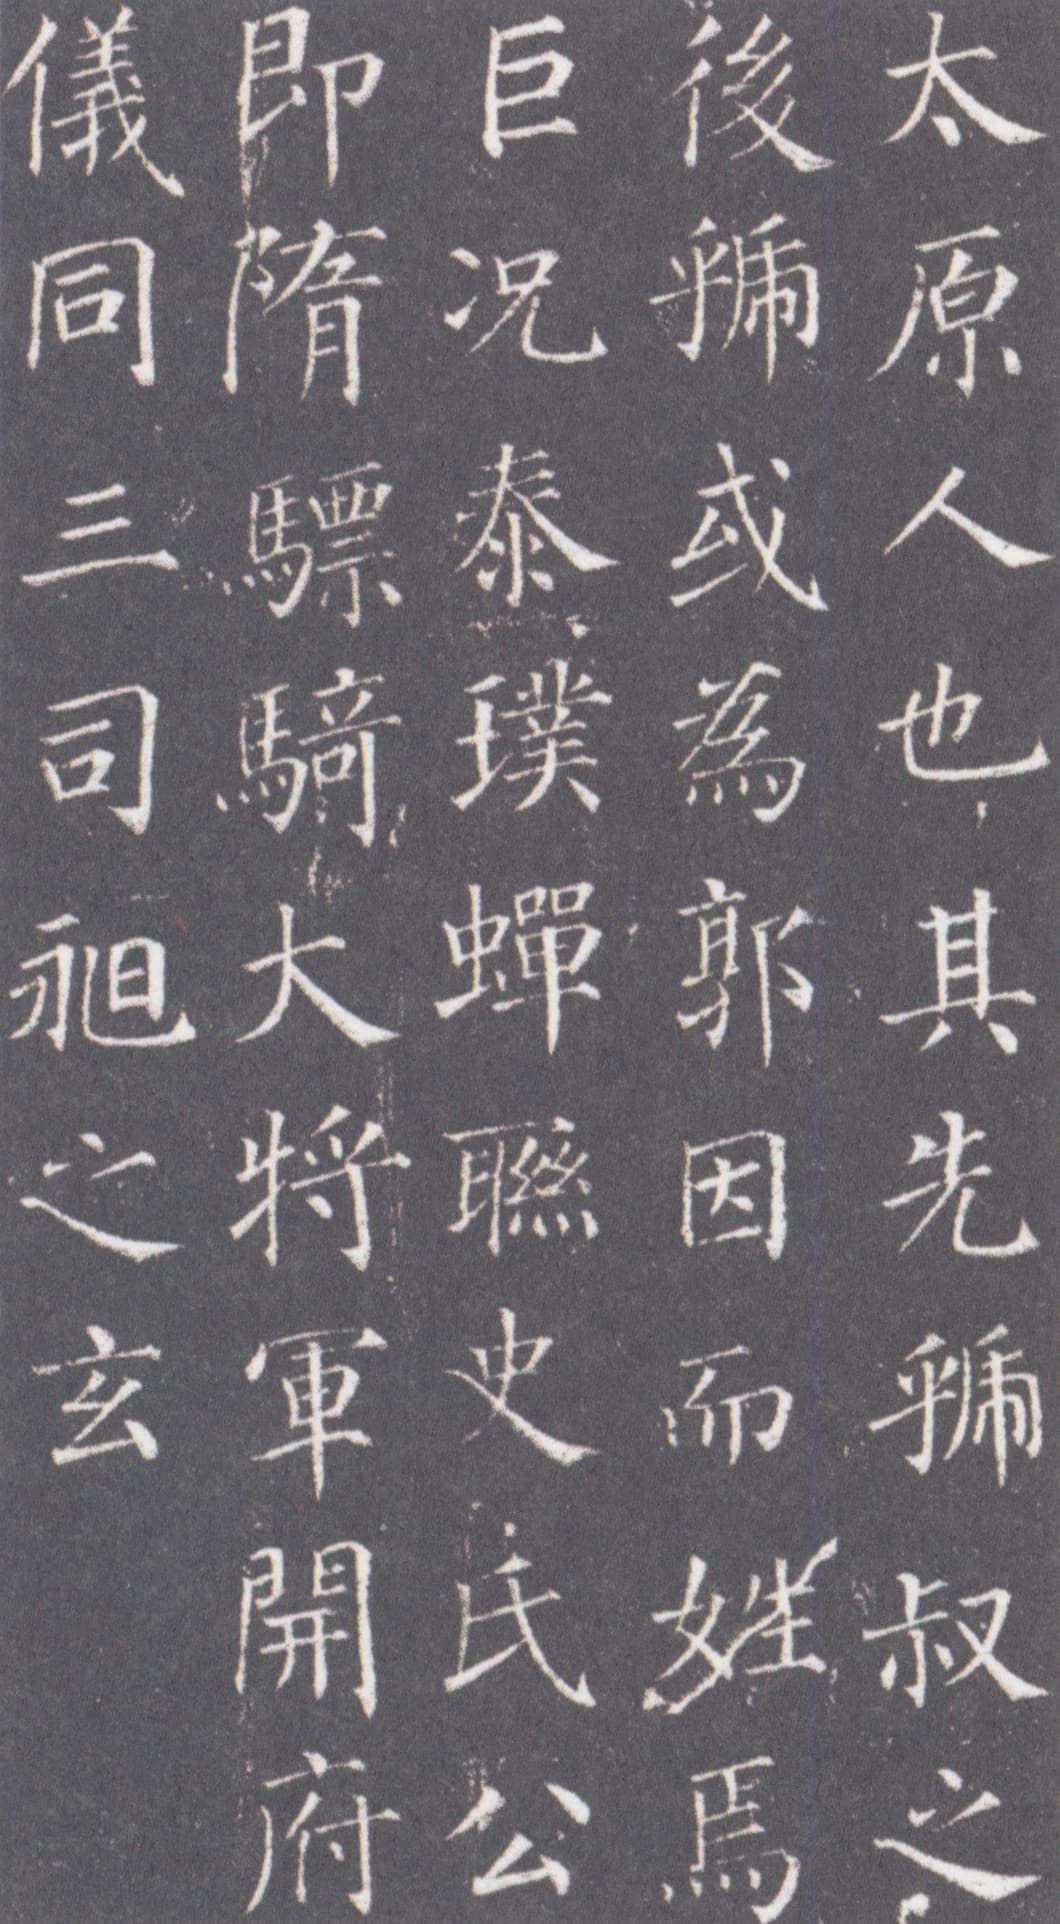 Yan Zhen Qing calligraphy in Kaishu style